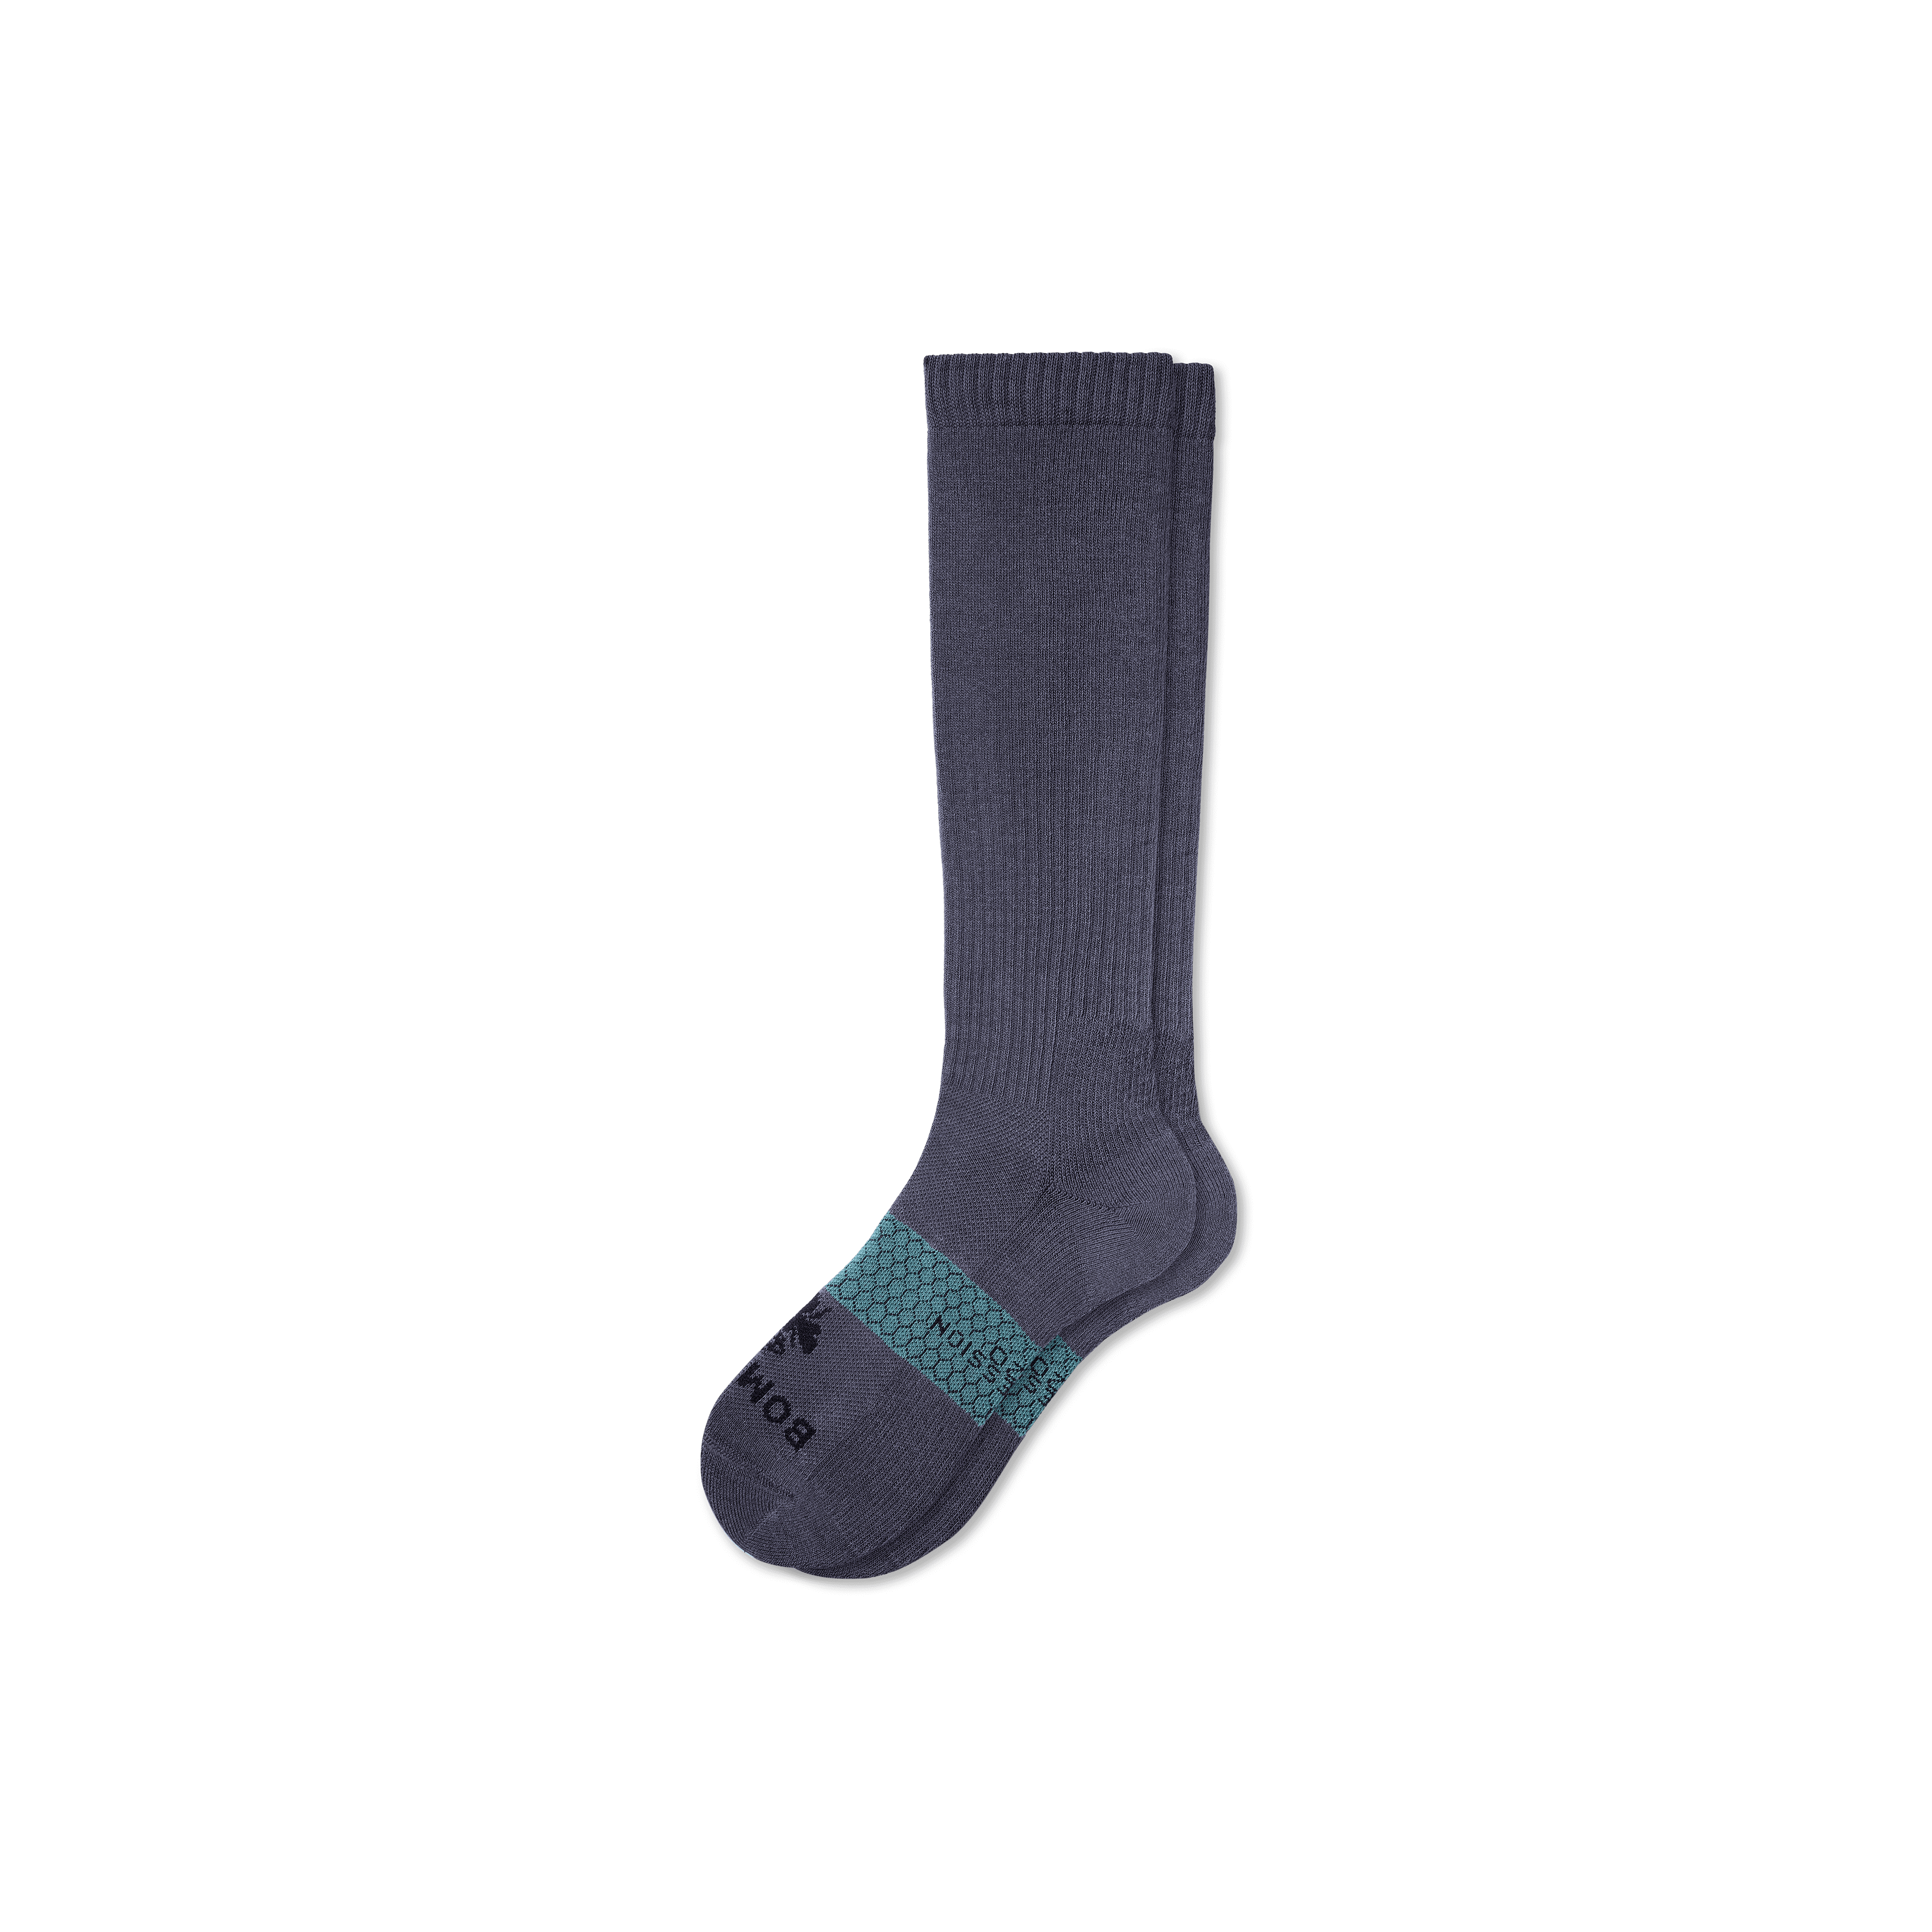 Bombas Everyday Compression Socks (15-20mmhg) In Galaxy